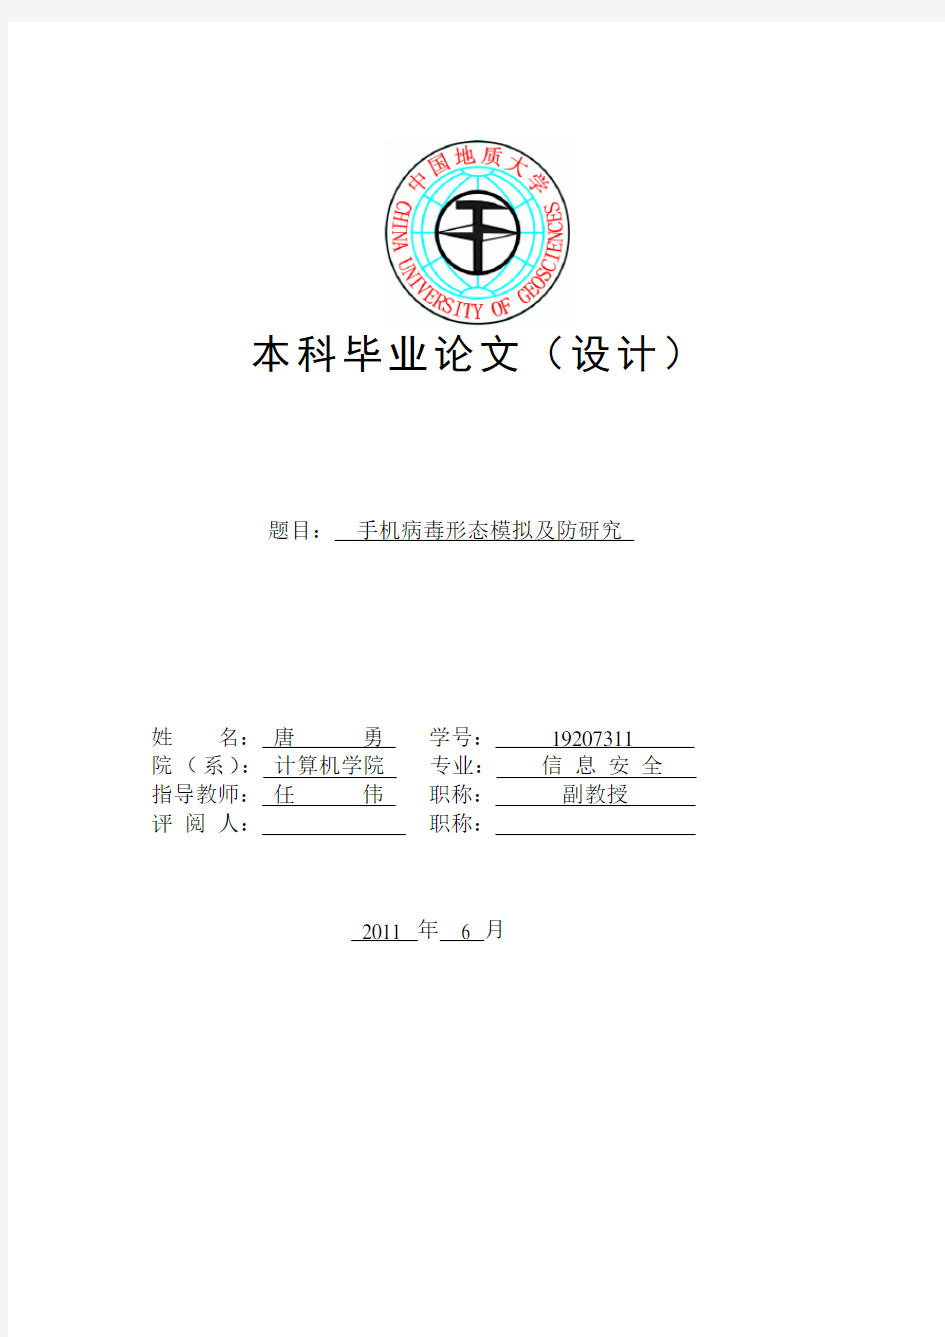 毕业设计论文封面(中国地质大学武汉)